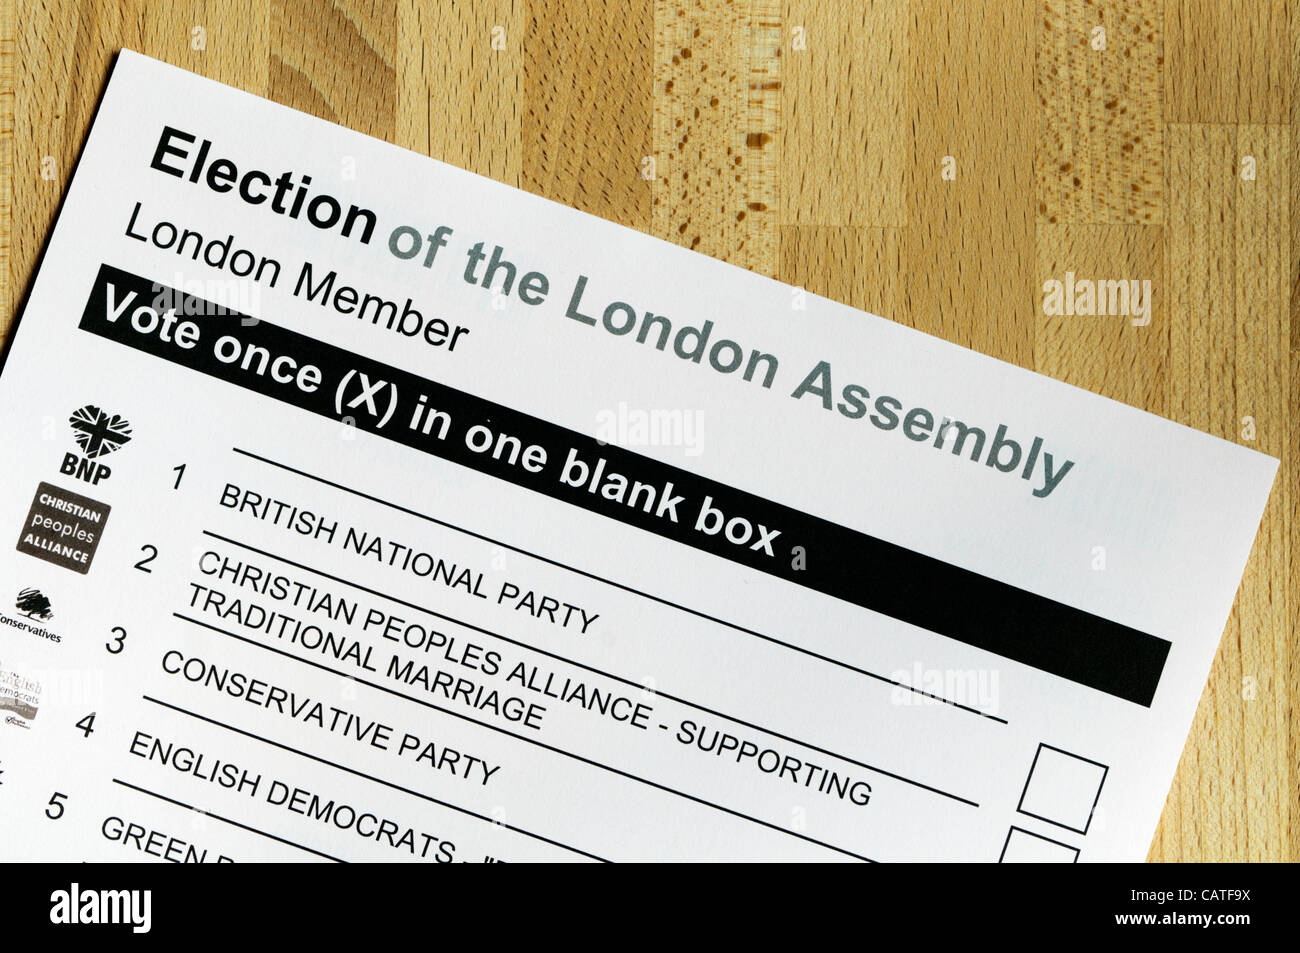 Londres, Royaume-Uni, 20 avril 2012, les élections locales doivent avoir lieu en Angleterre le 3 mai 2012. Il s'agira notamment de l'élection du maire de Londres et l'Assemblée de Londres. Photo présente le bulletin de vote pour l'élection à l'Assemblée de Londres. Banque D'Images